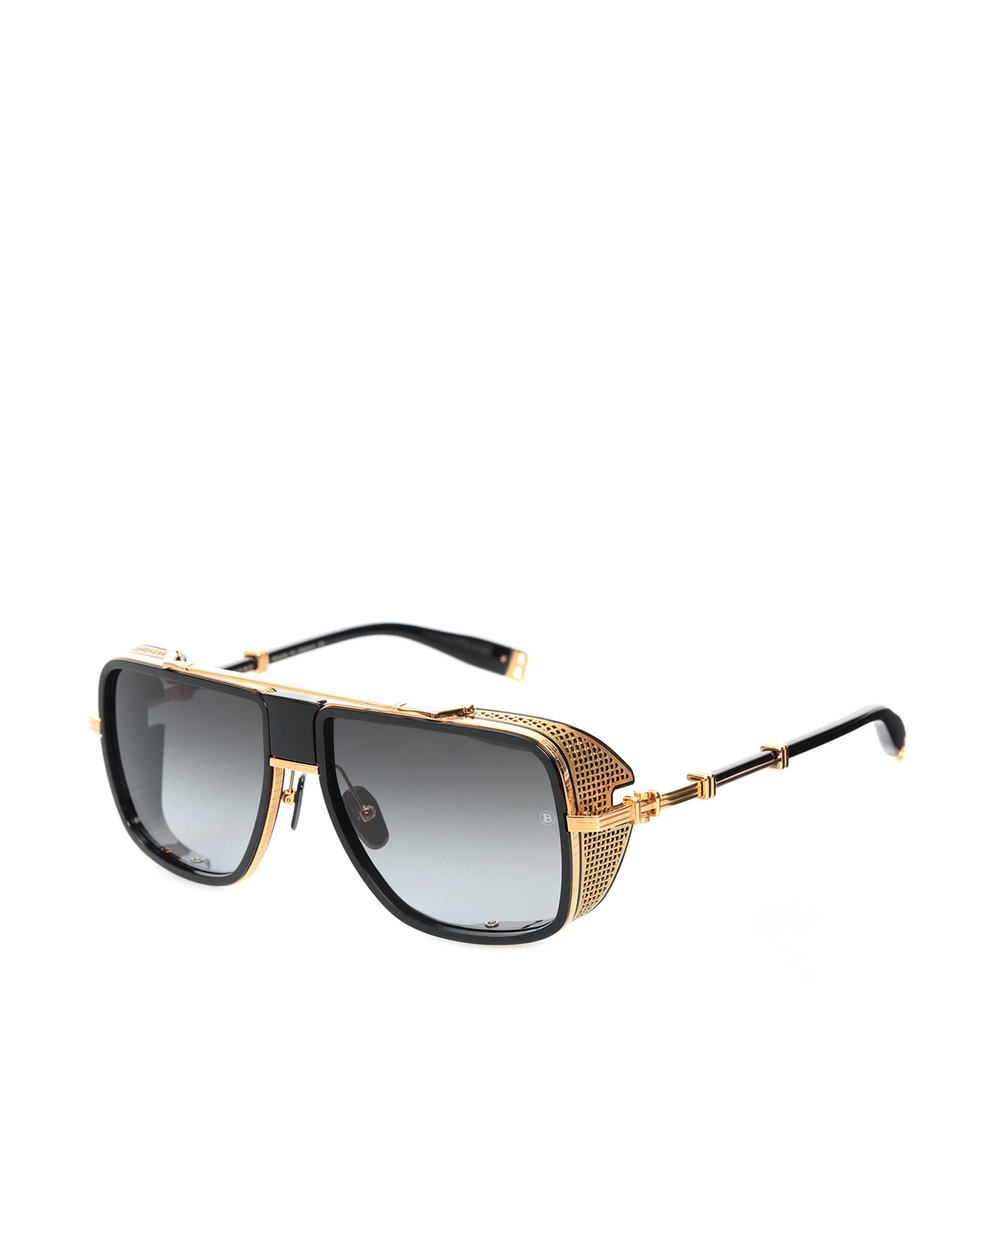 Солнцезащитные очки O.R. Balmain BPS-104A-59, черный цвет • Купить в интернет-магазине Kameron